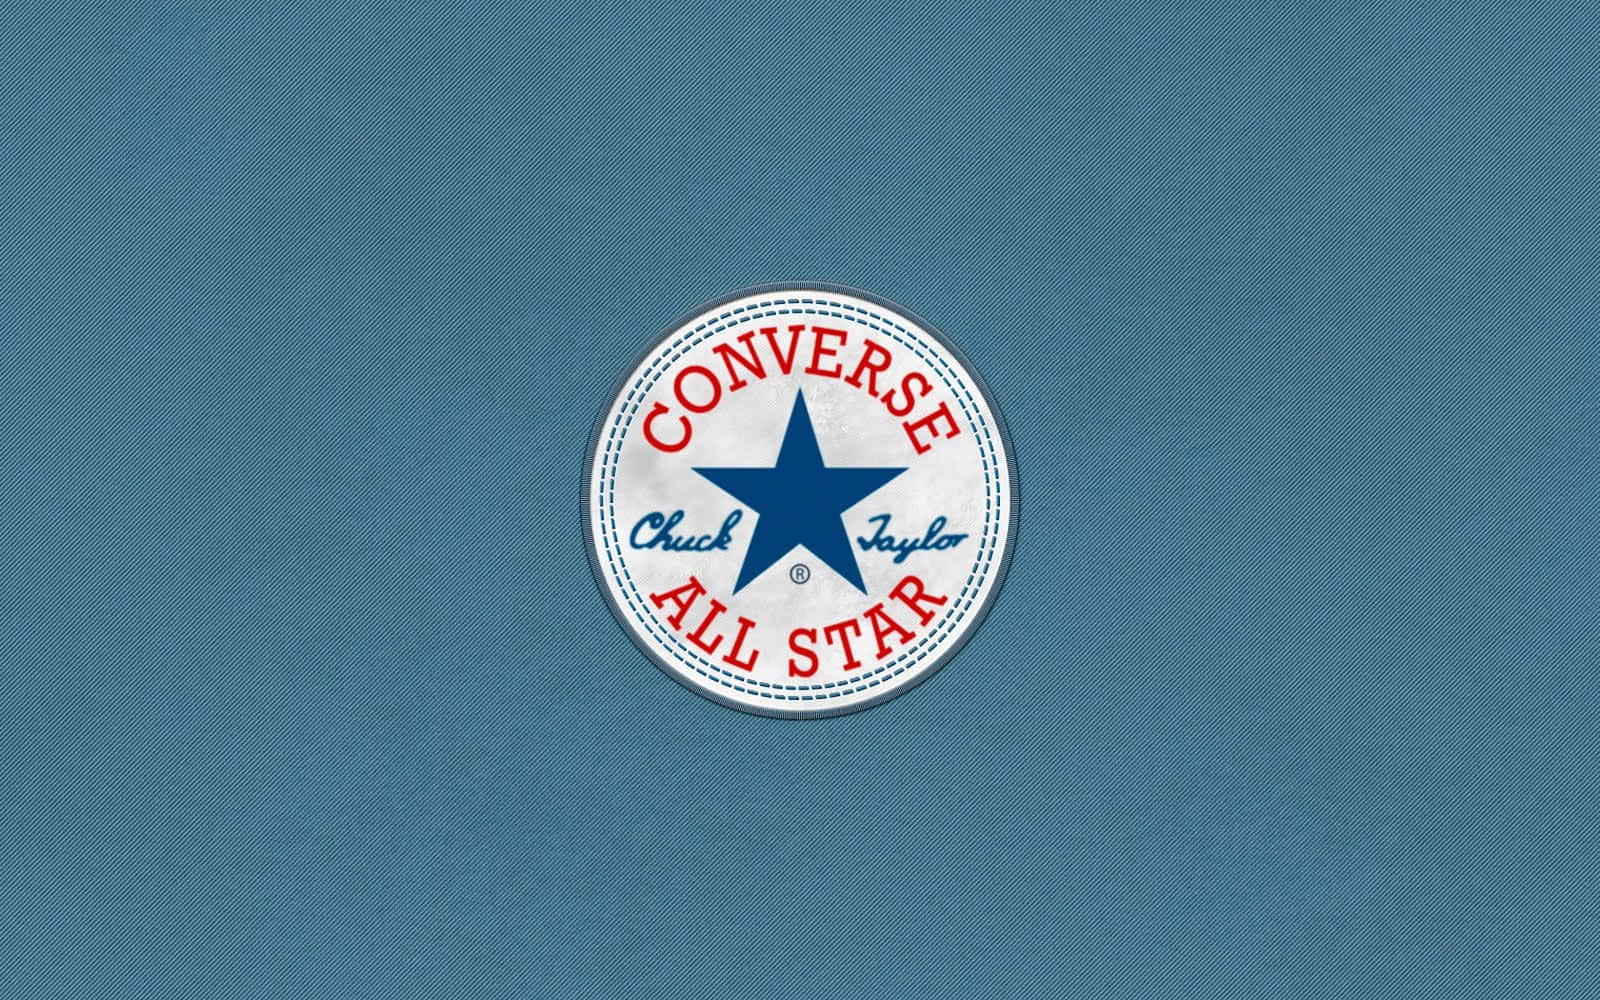 Envy Av Converse-logotypen